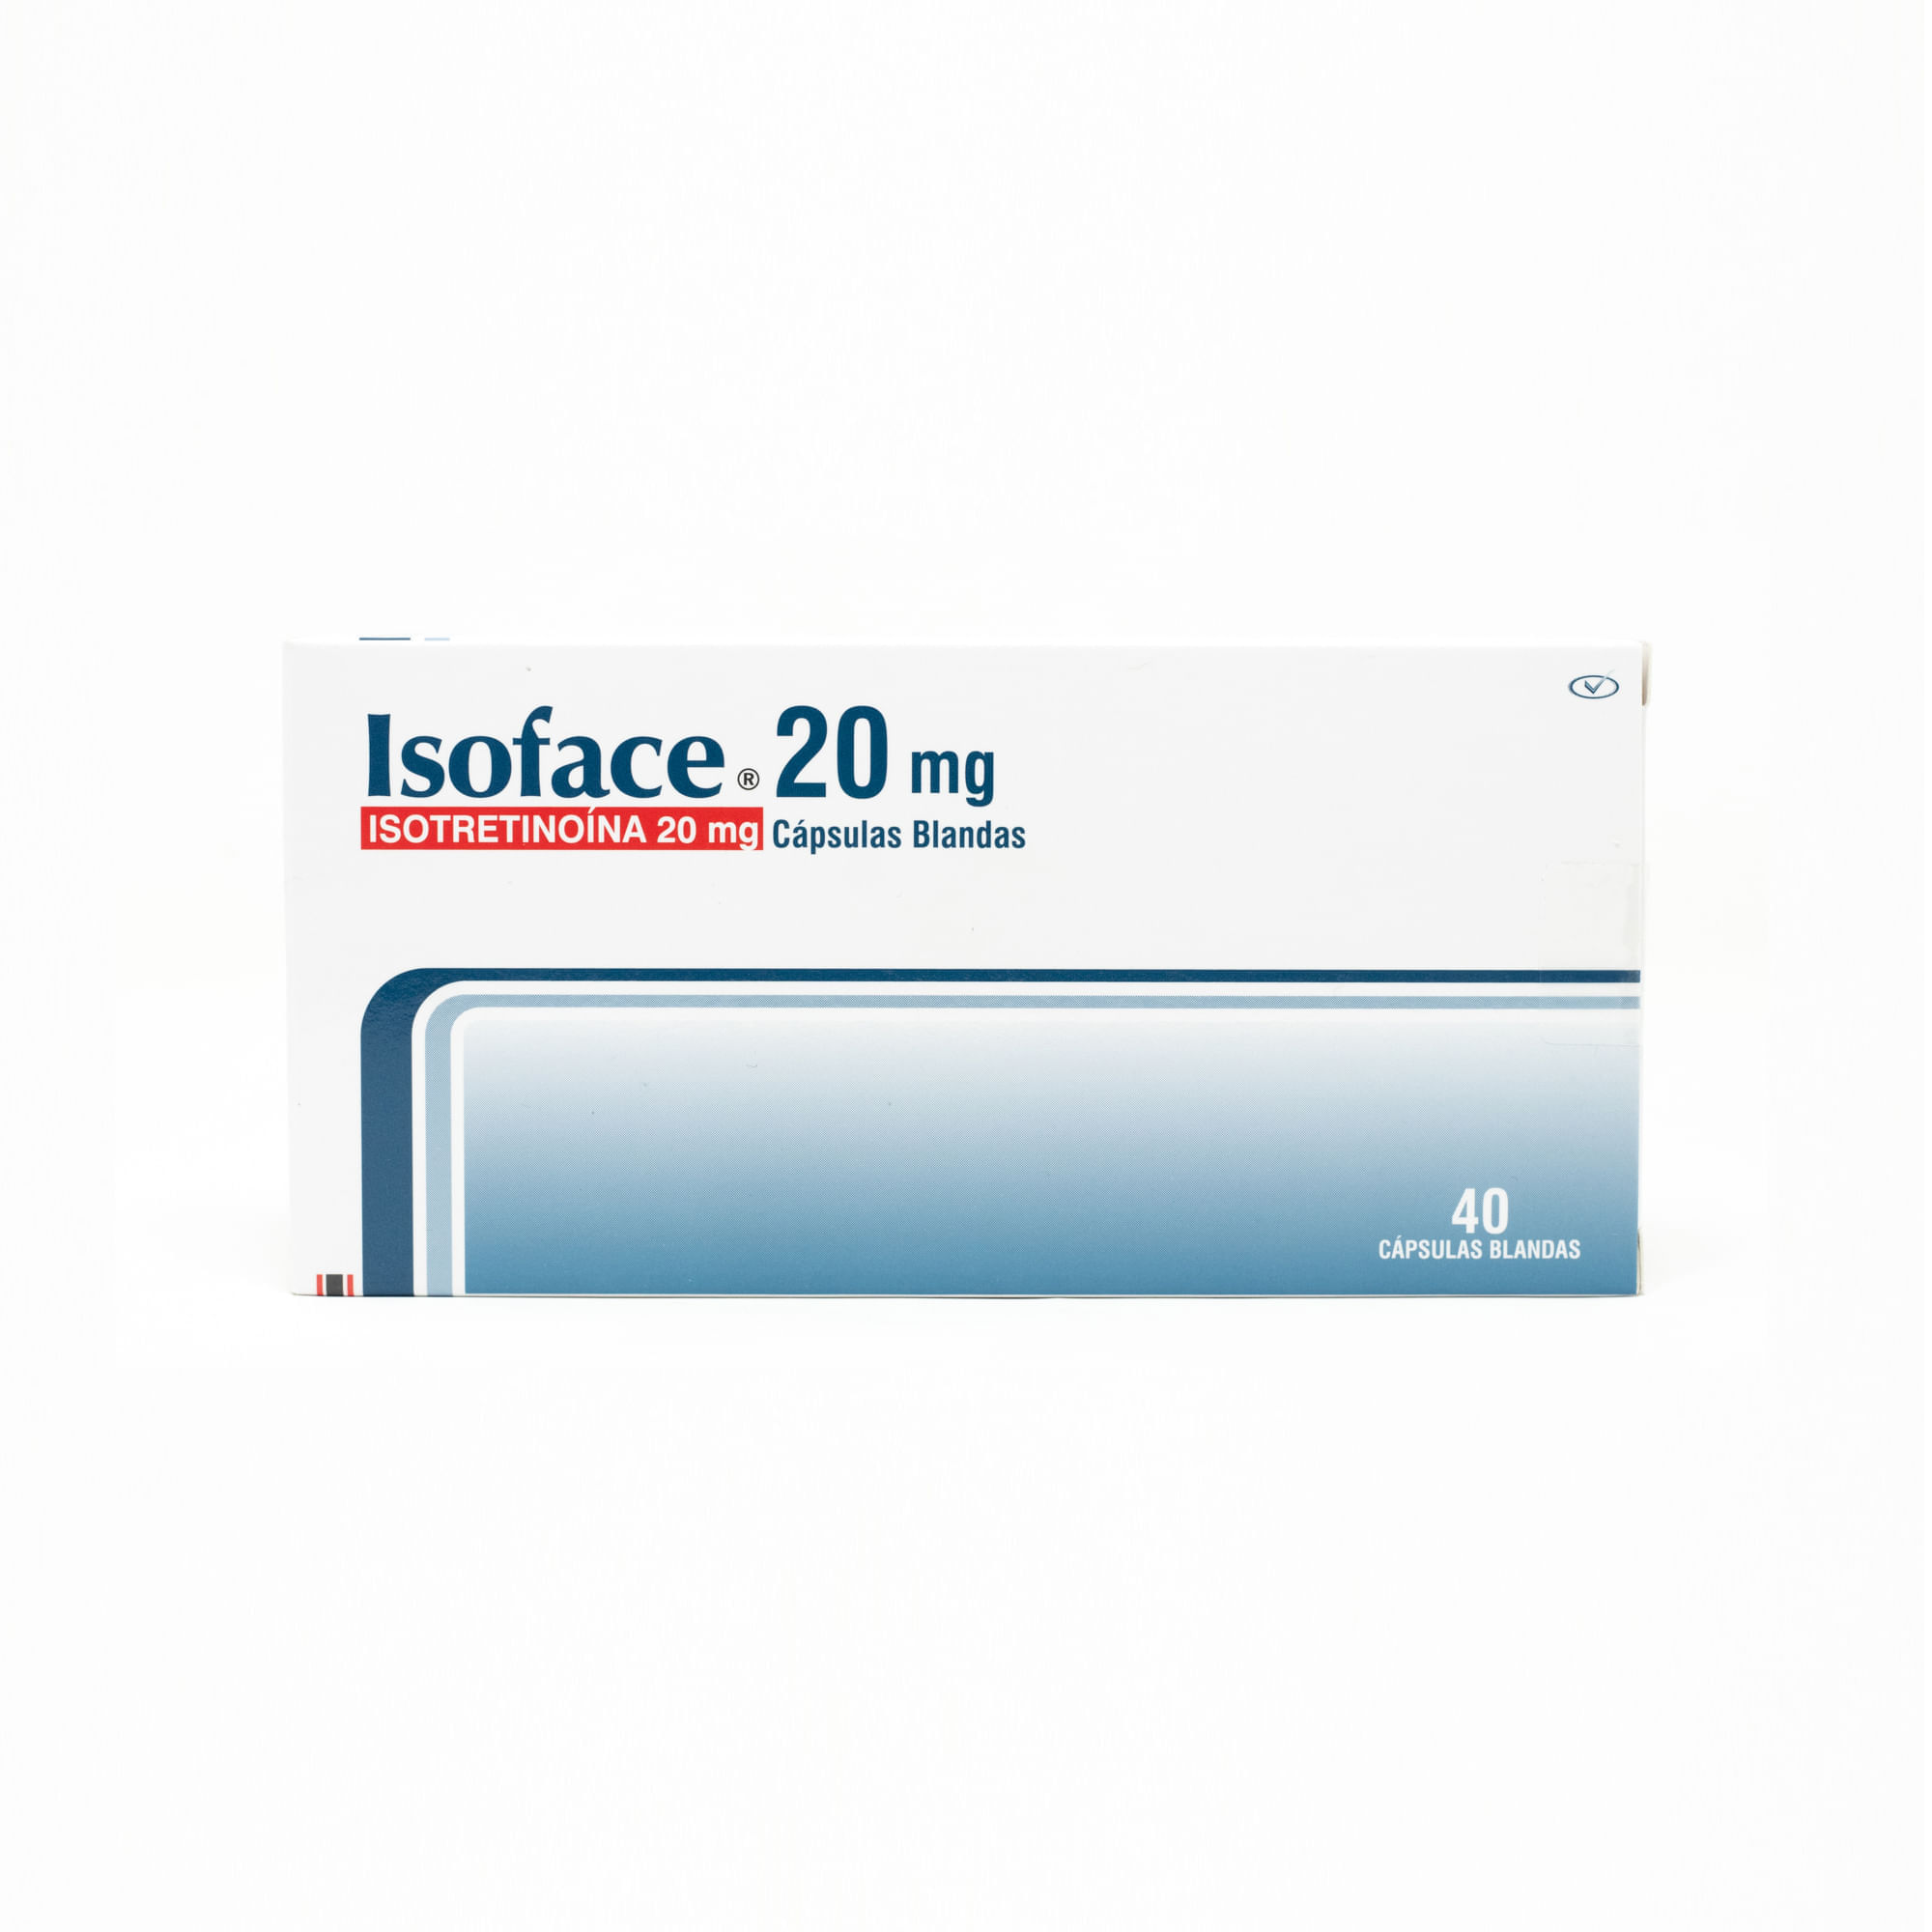 Precio isotretinoina 20 mg